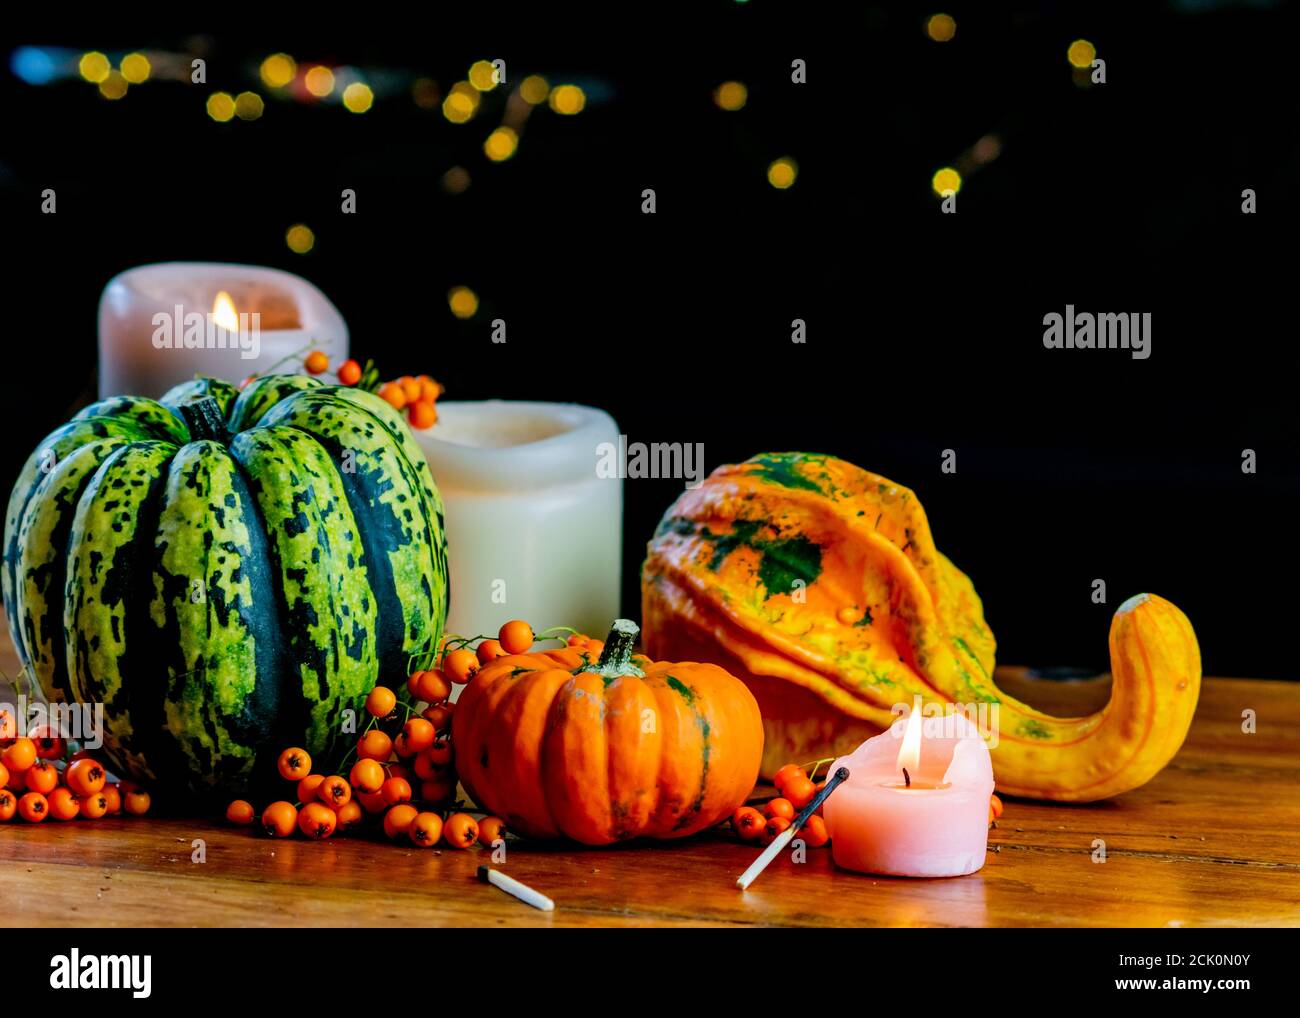 Varietà di zucche, bacche di rowan e candele su tavola rustica in legno e sfondo nero con bokeh. Autunno simbolico verdure in verde, giallo e. Foto Stock